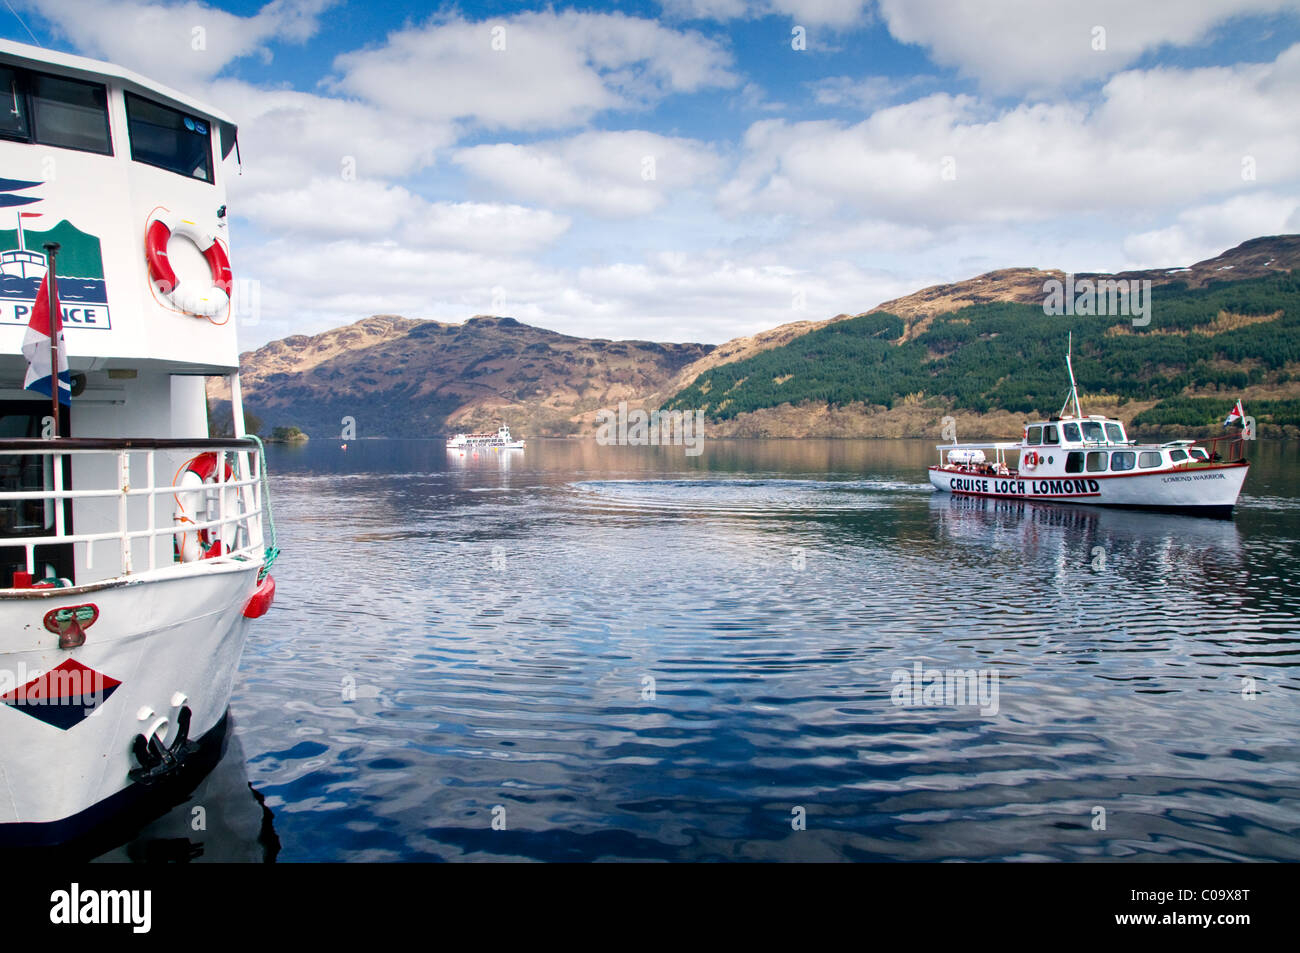 Les excursions en bateau sur le Loch Lomond, près de Tarbet, ARGYLL & BUTE, Ecosse, Royaume-Uni Banque D'Images